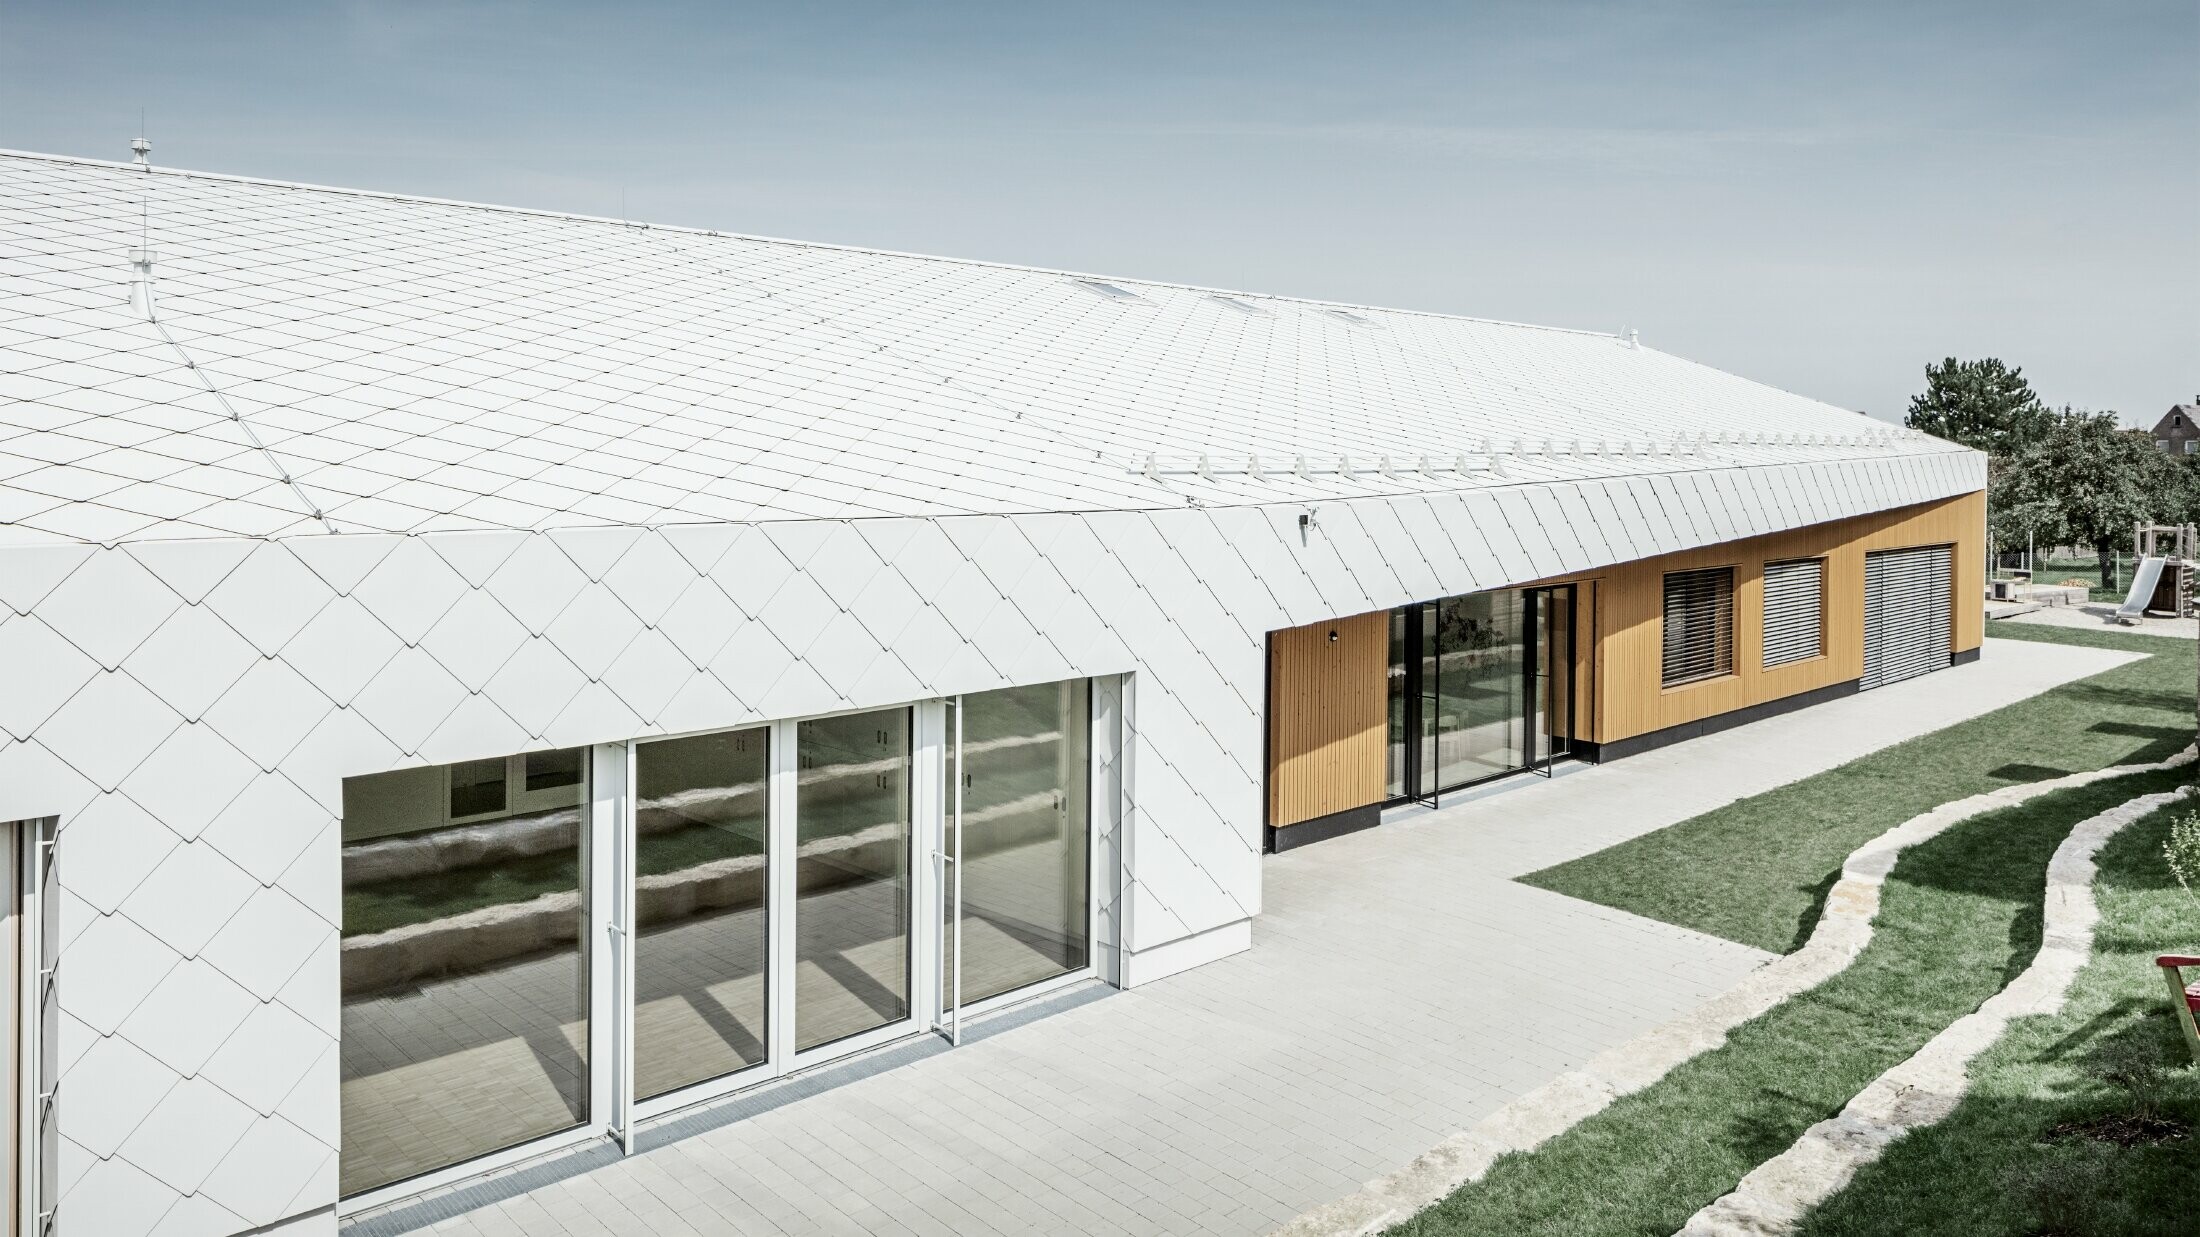 Kleuterschool bekleed met PREFA dak- en gevellosanges 44 in prefawit, het dakoppervlak loopt door over de gevel; grote raampartijen